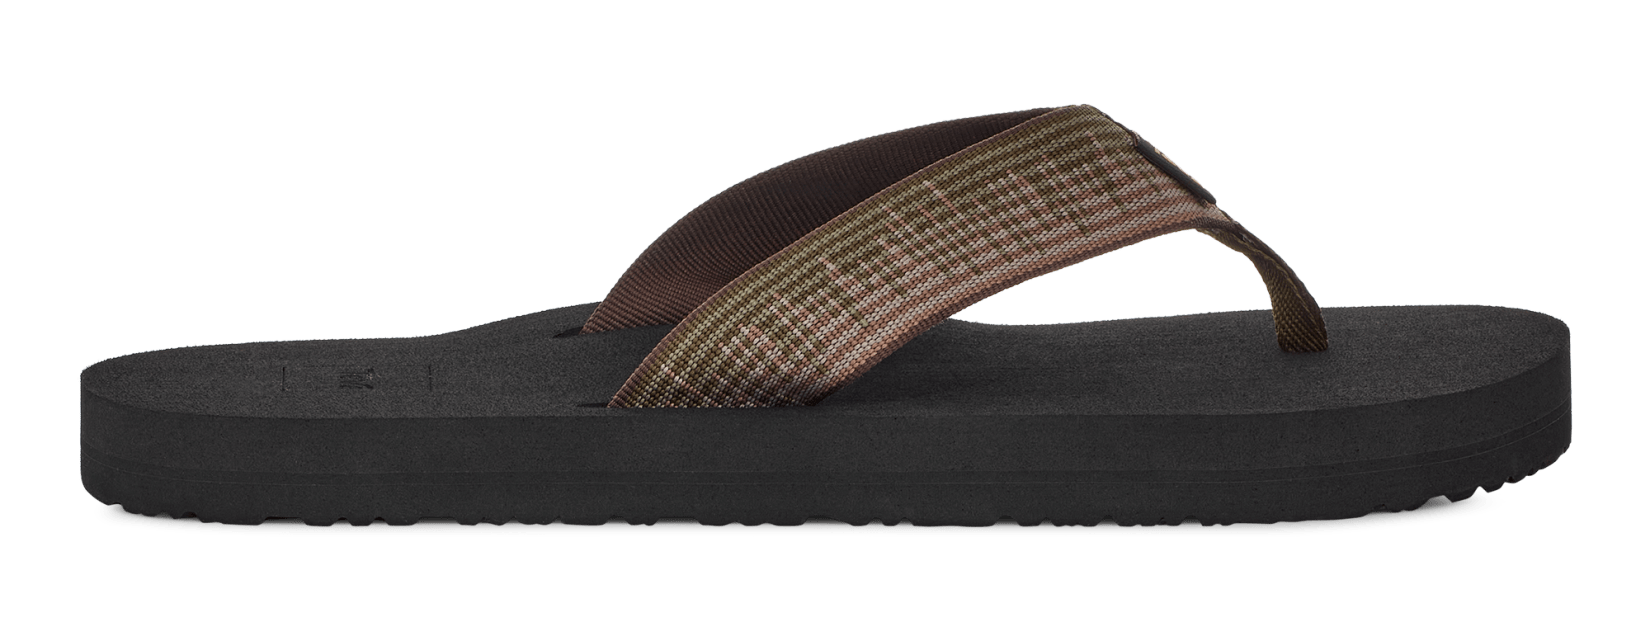 Stedord tromme Fra Teva® Mush for Men | Most Comfortable Sandals at Teva.com